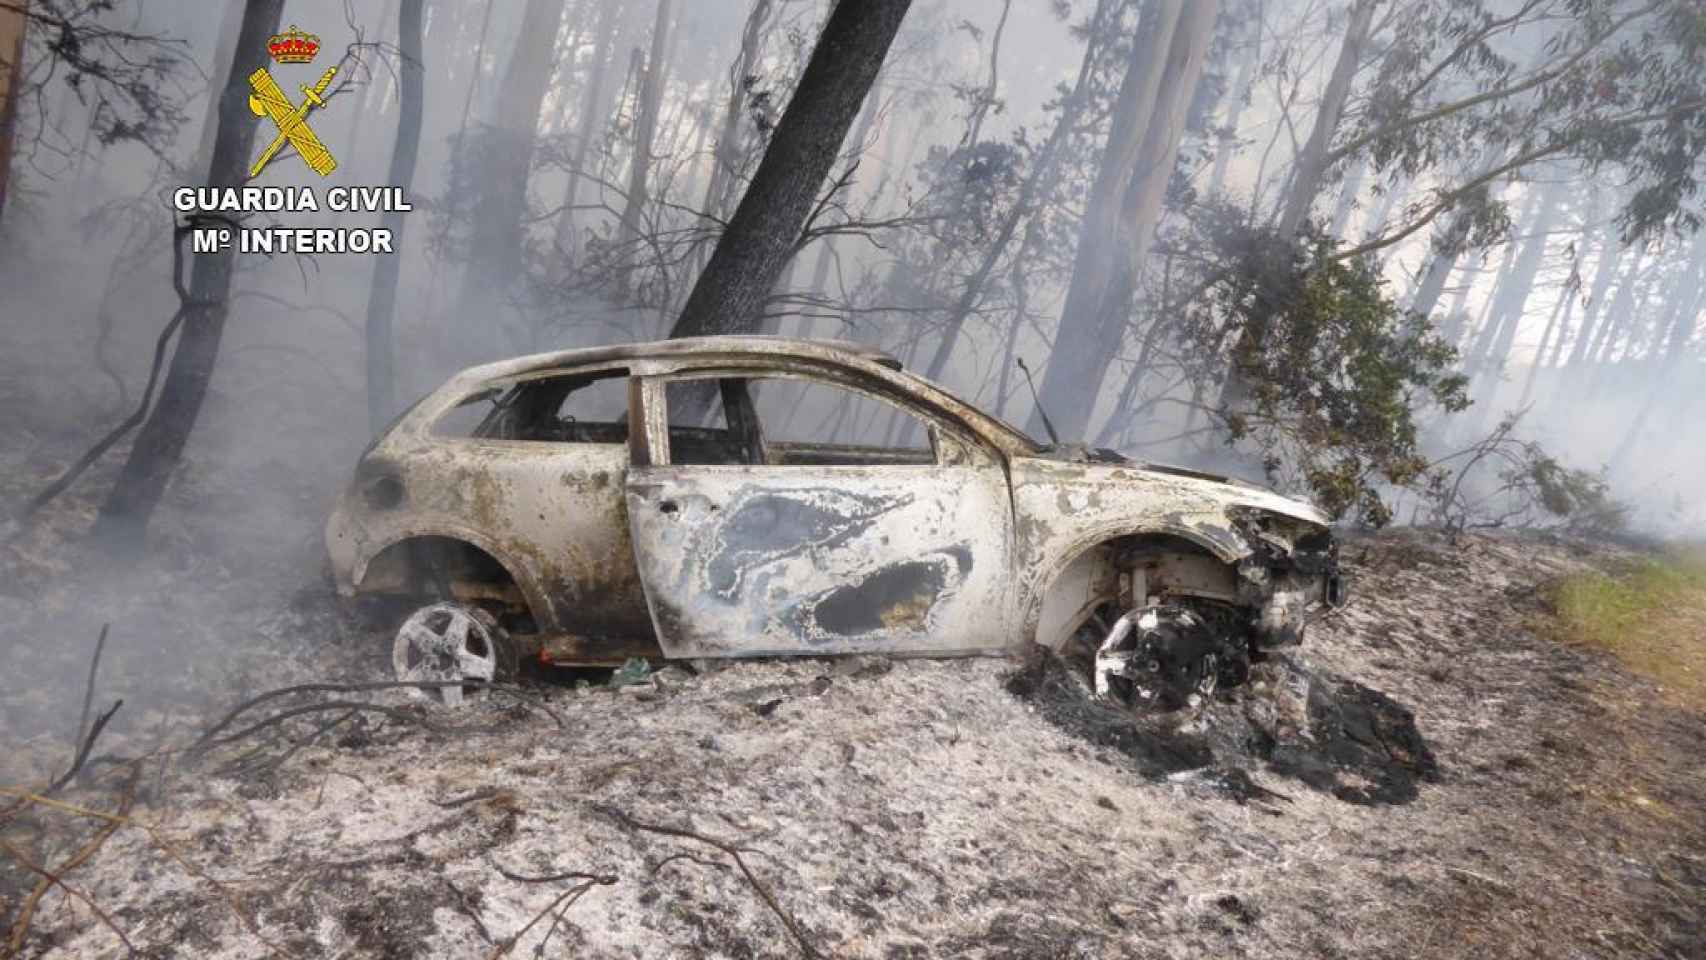 Fotografía del vehículo calcinado en el incendio forestal